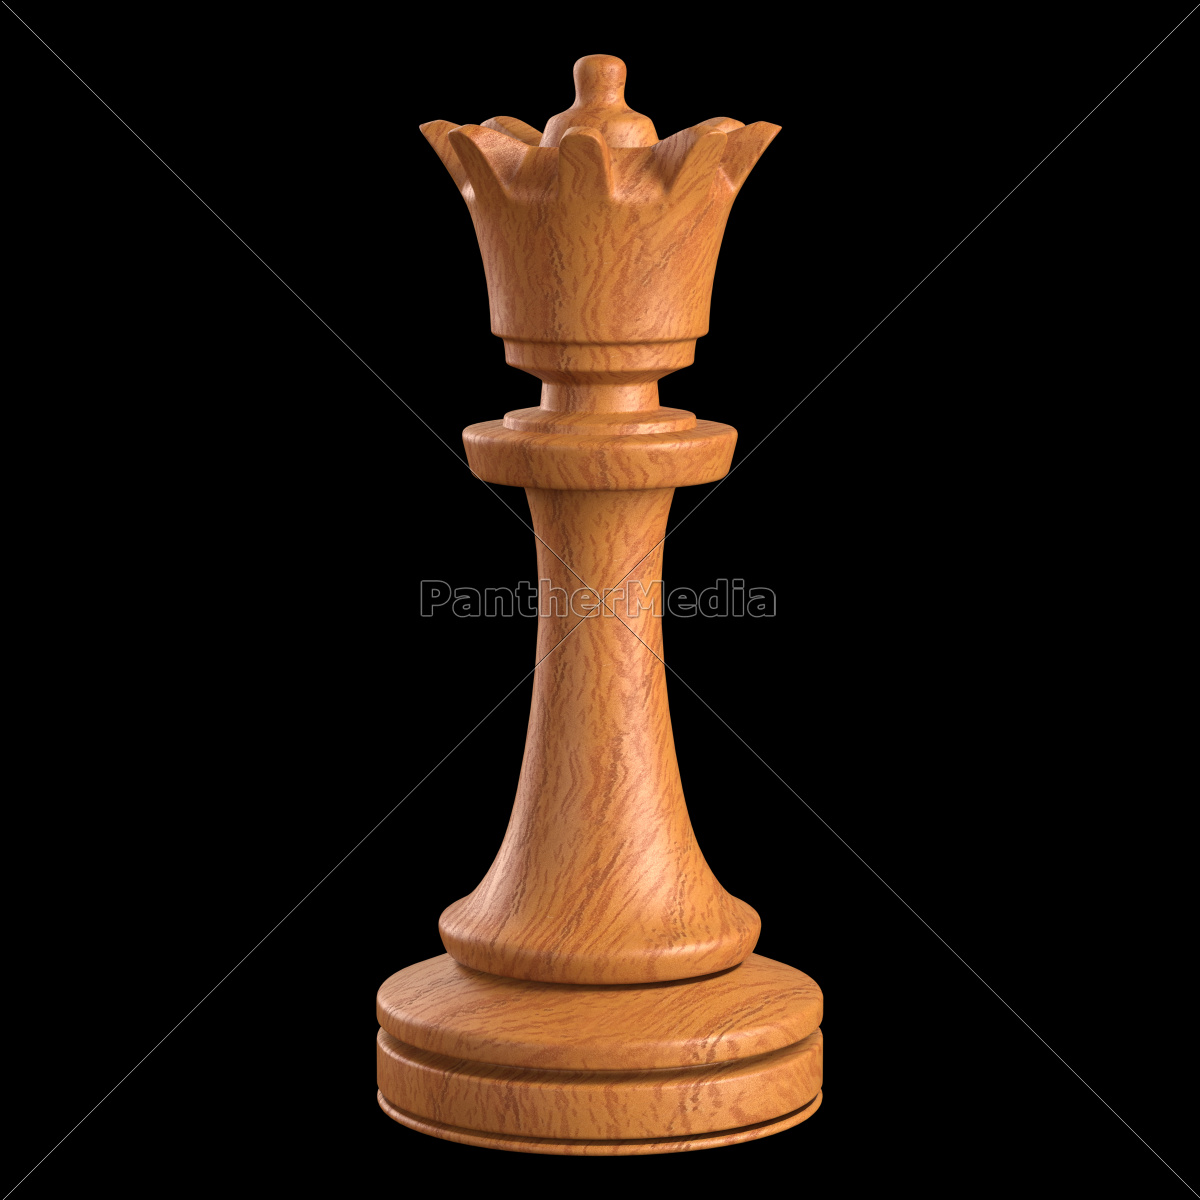 Jogo de xadrez foto de stock. Imagem de engano, rainha - 43984136